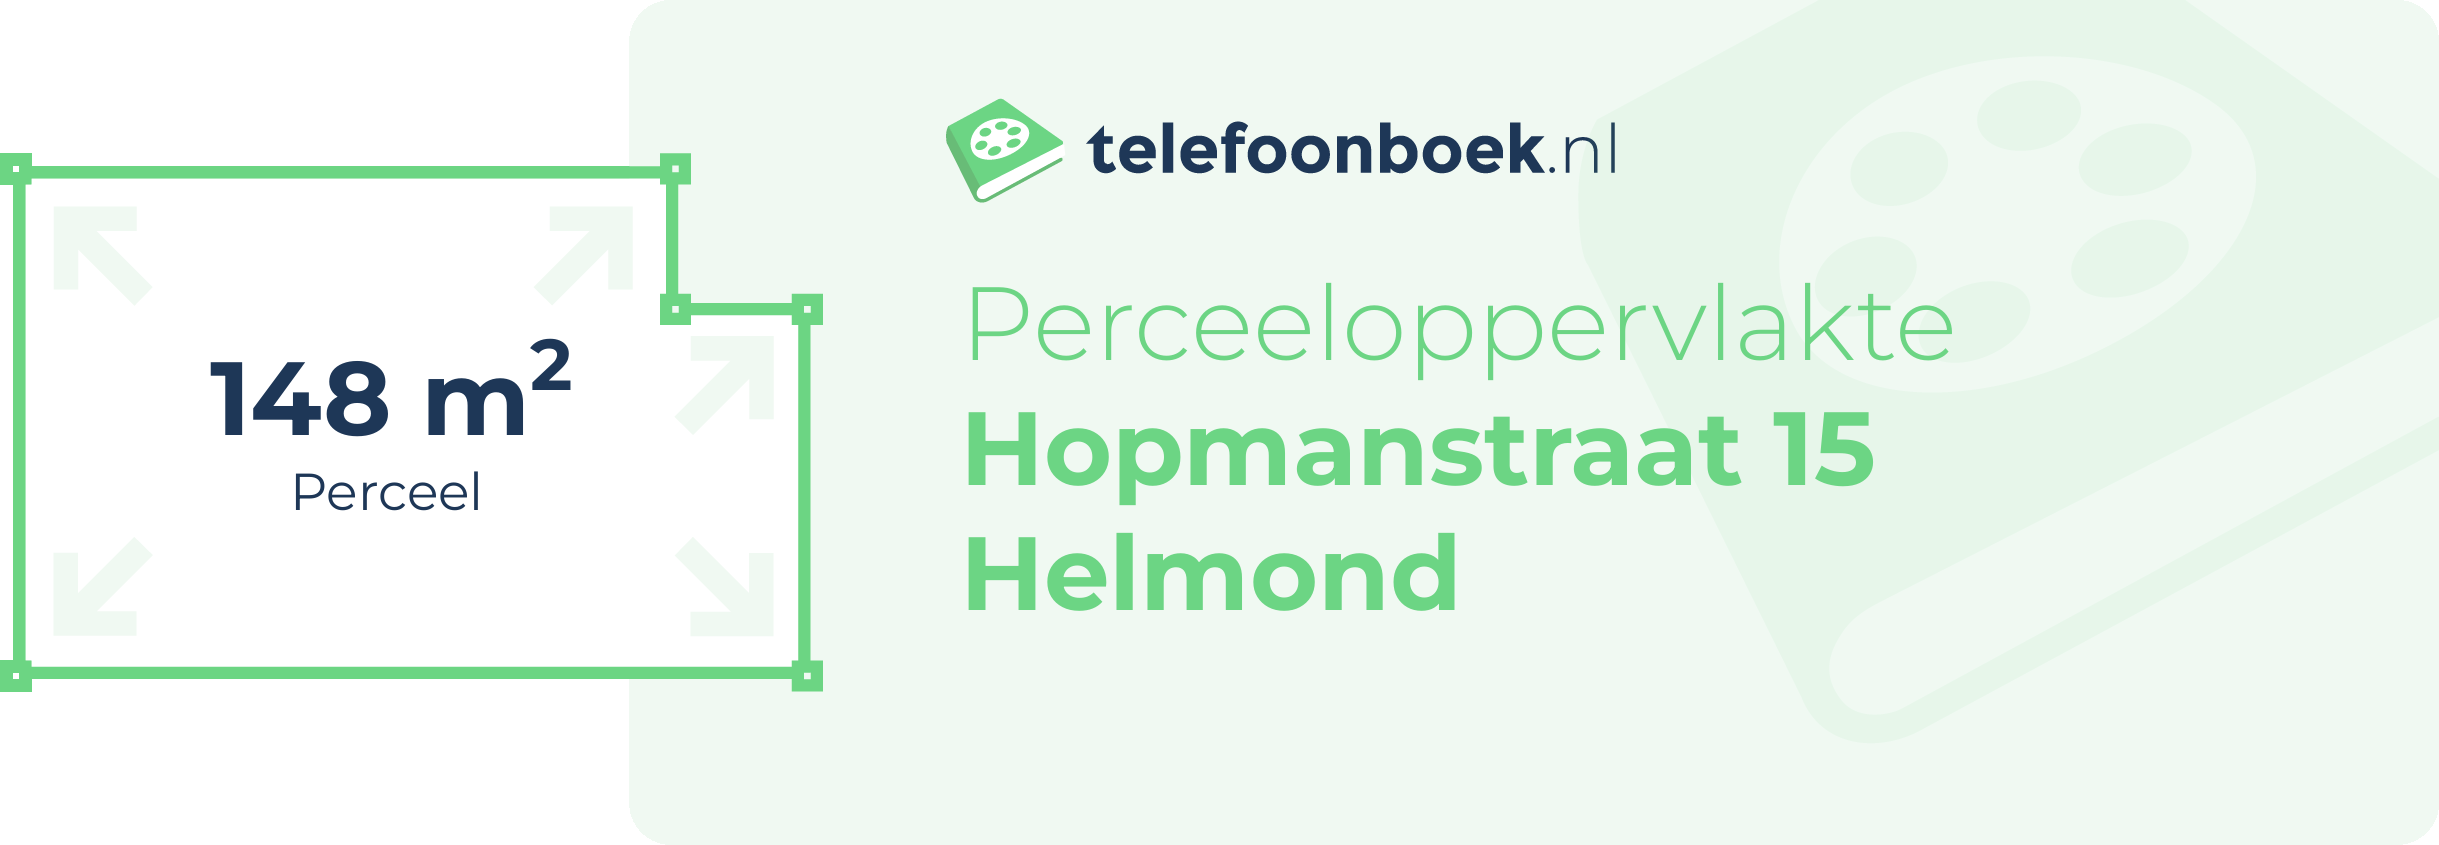 Perceeloppervlakte Hopmanstraat 15 Helmond